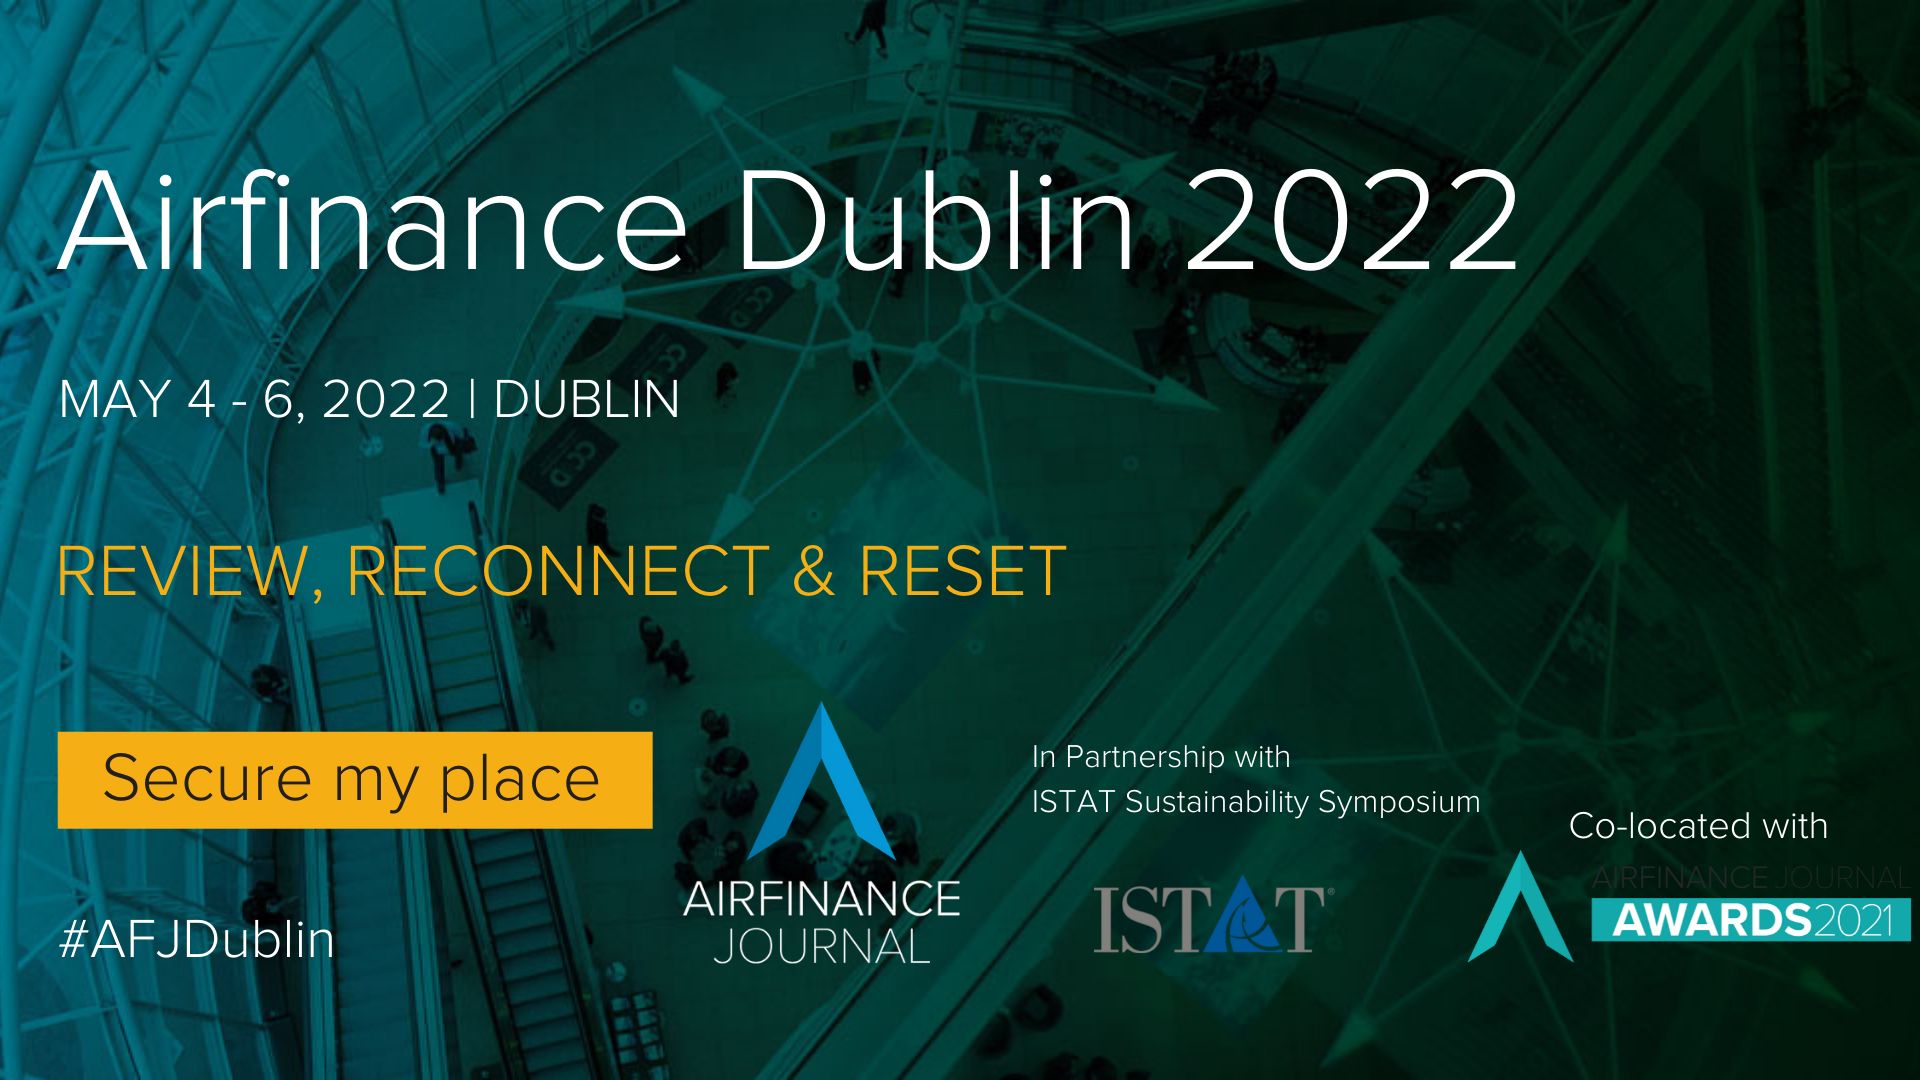 Airfinance Dublin 2022, Dublin, Ireland